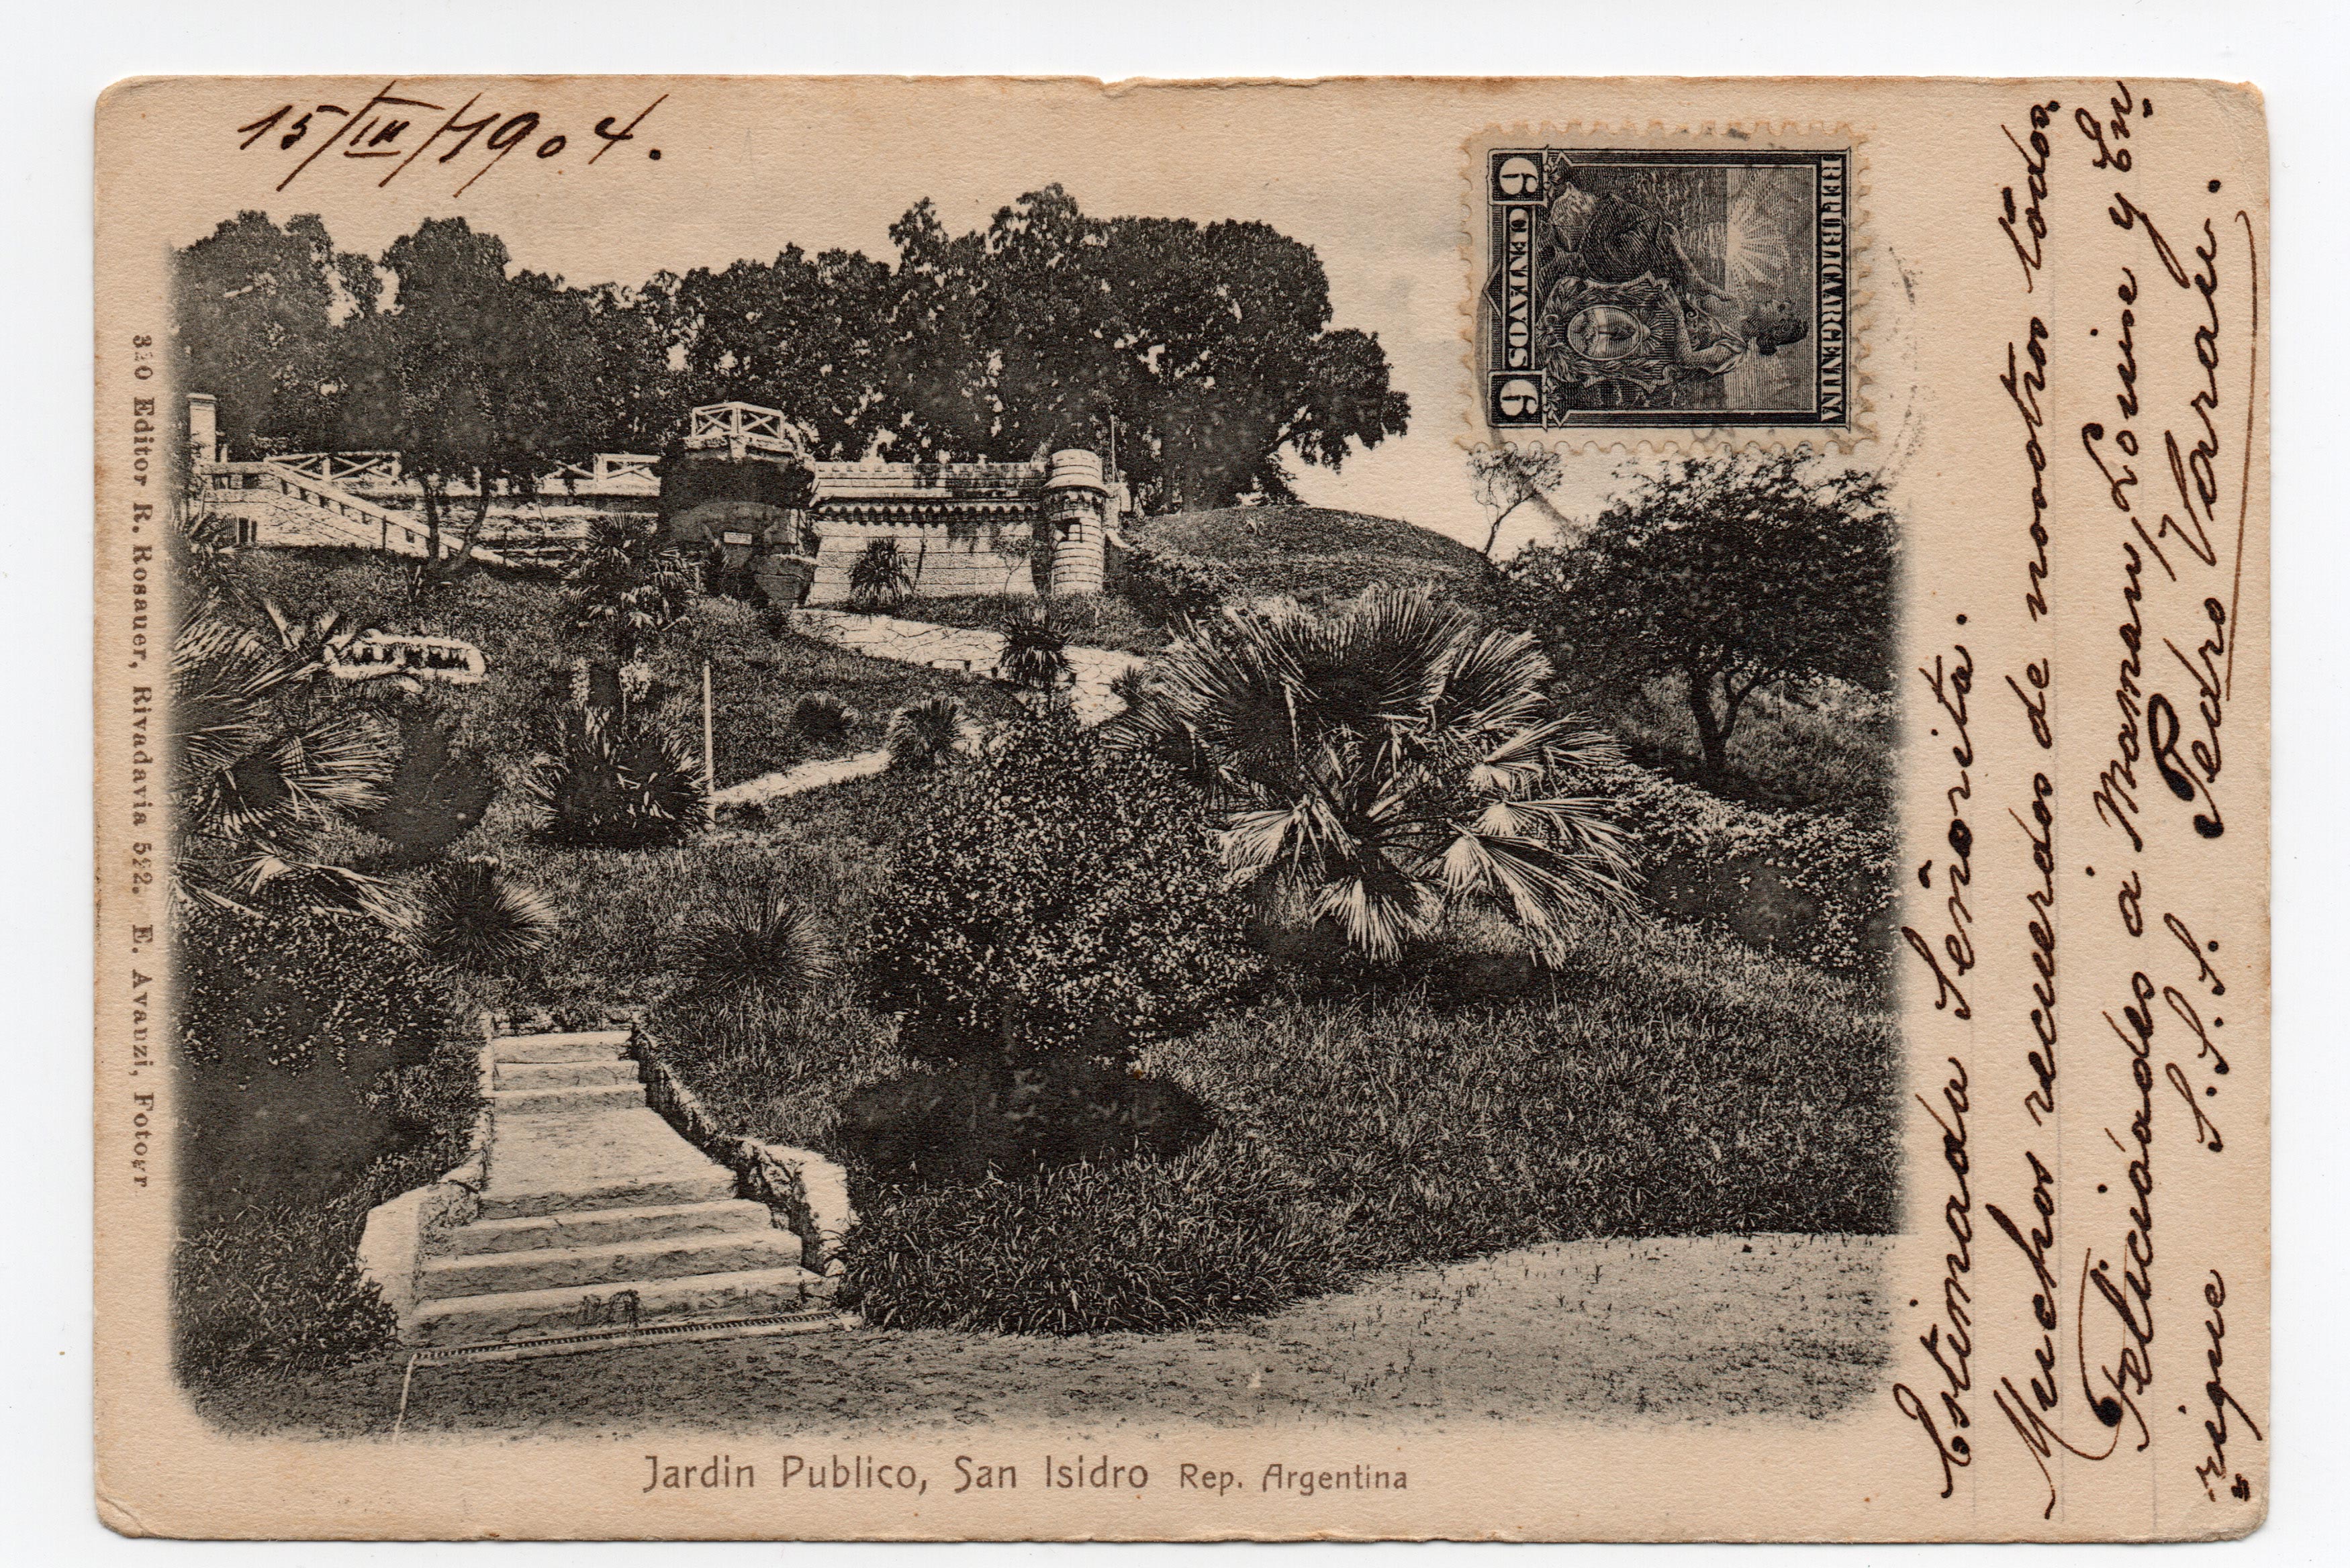 Una vista del Paseo de los Tres Ombúes que la postal denomina “jardín público”.